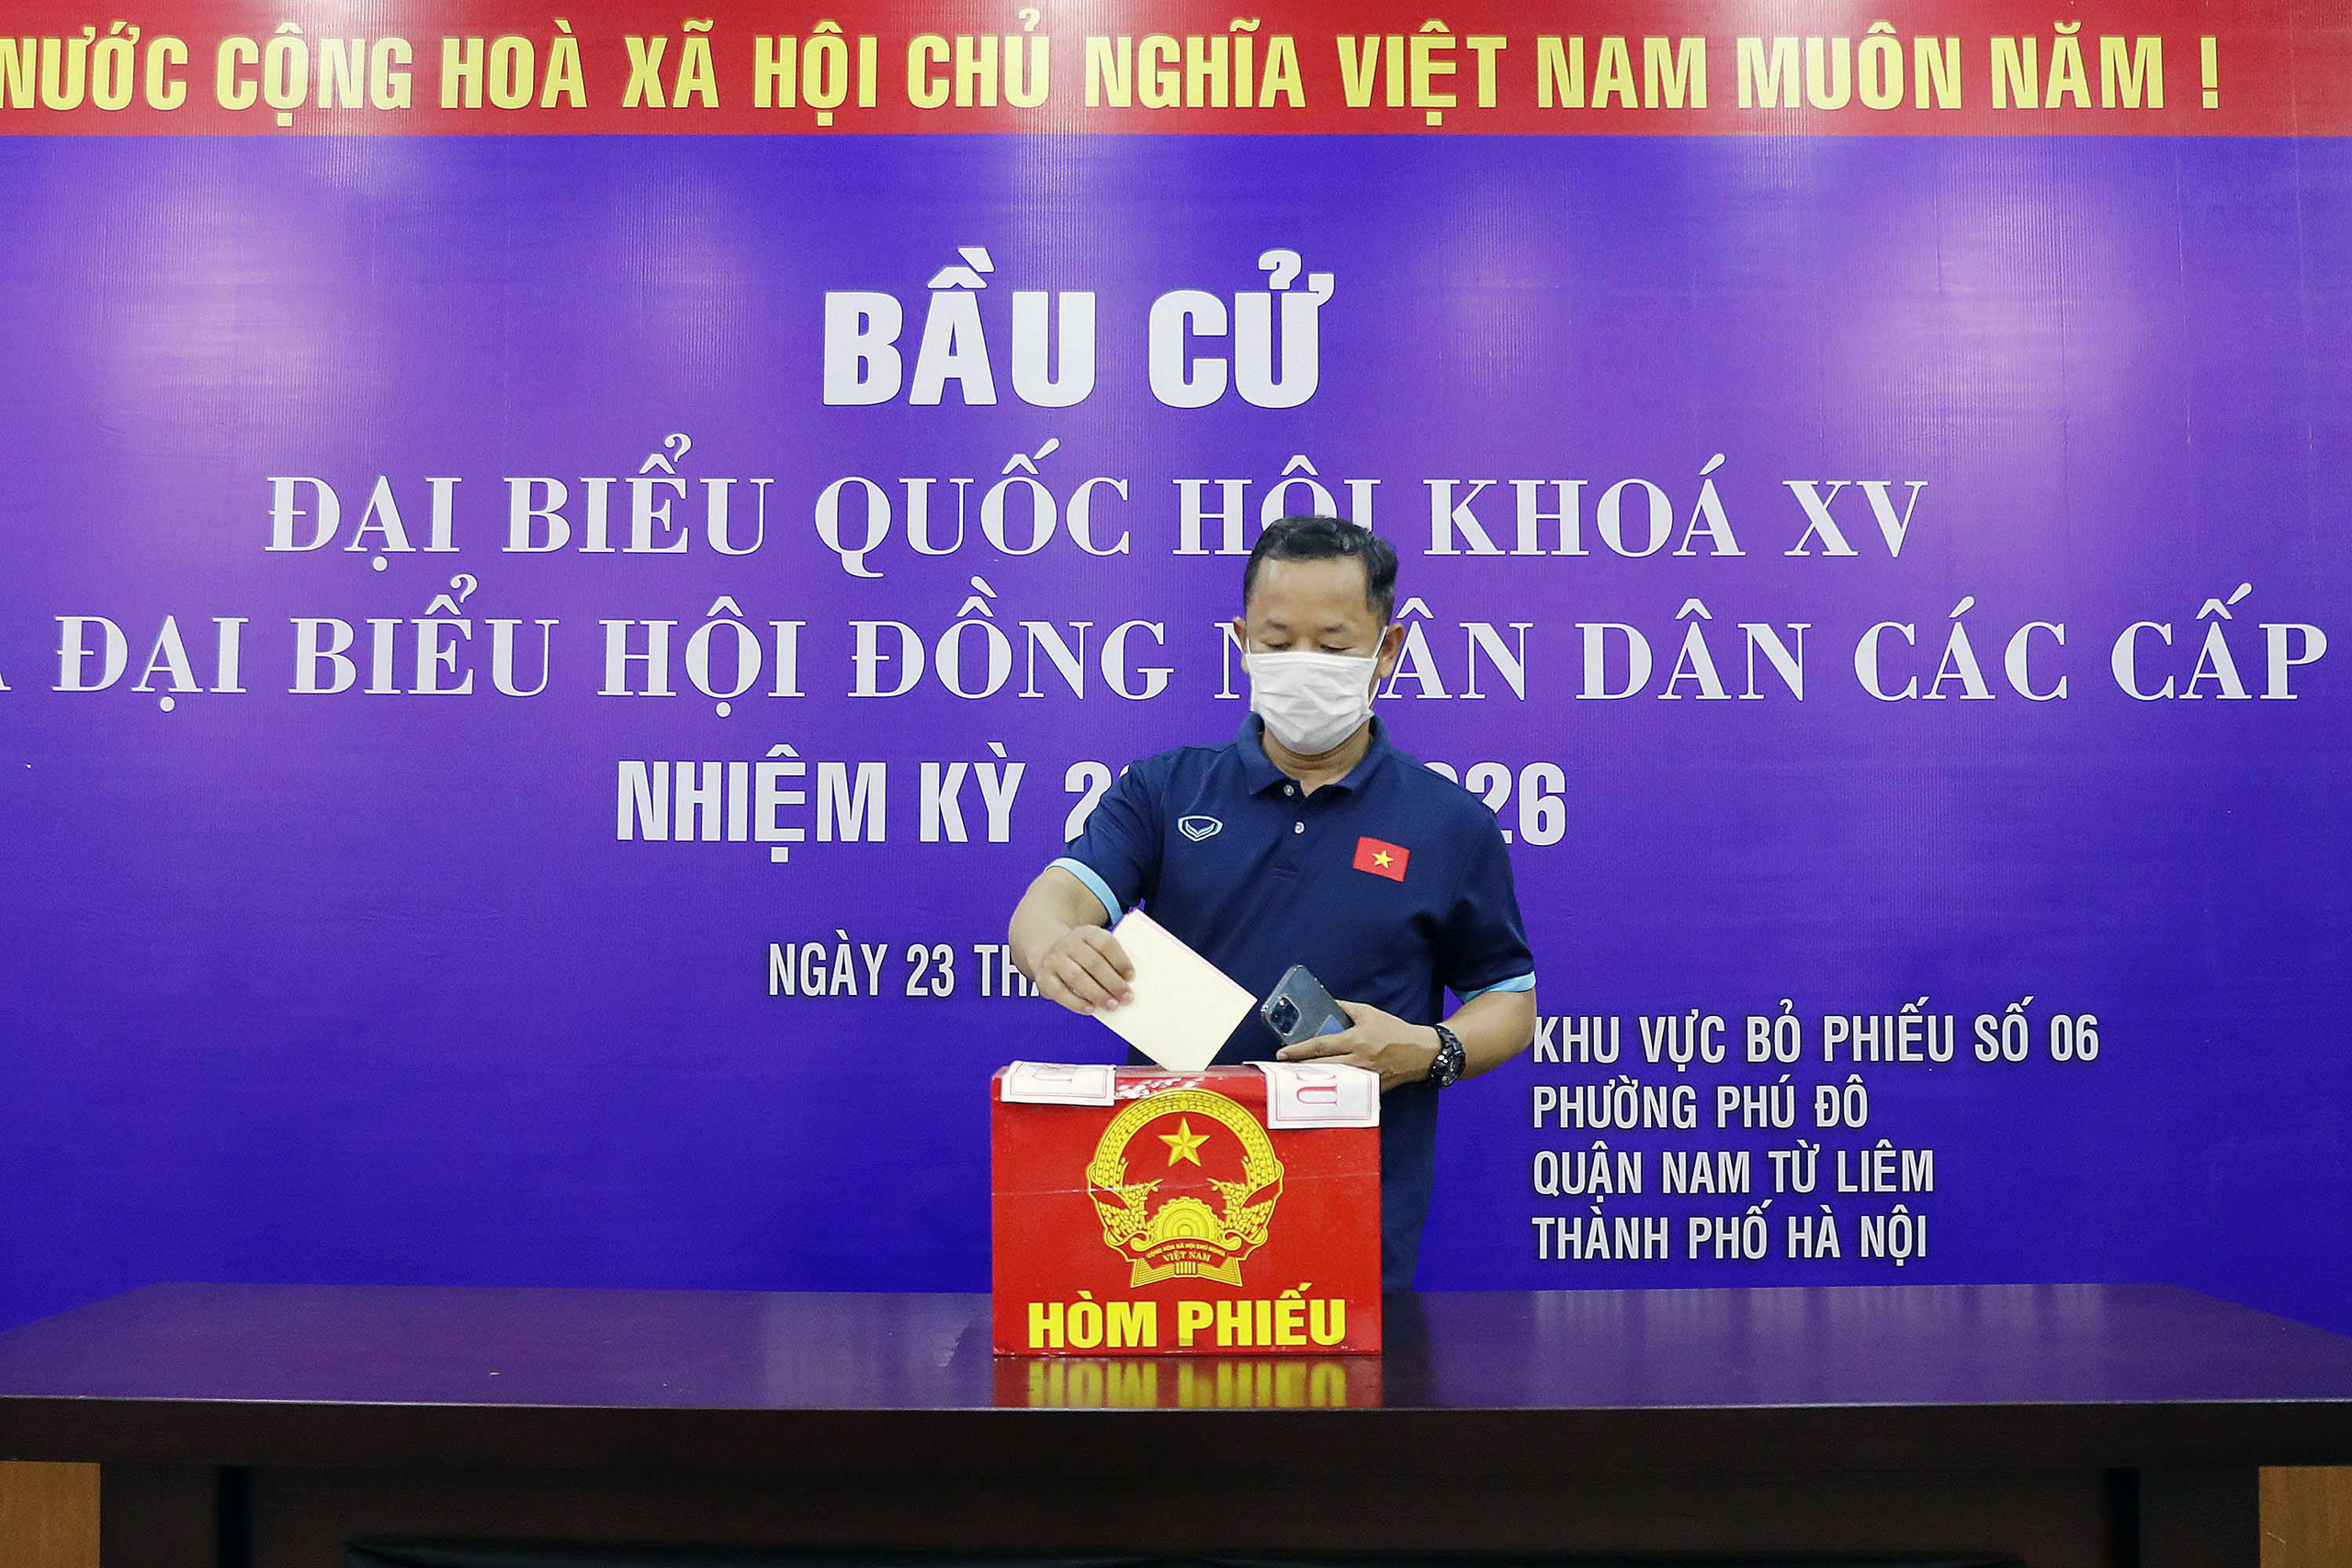 Cận cảnh các tuyển thủ bóng đá Việt Nam vui tươi bỏ phiếu bầu cử - Ảnh 6.